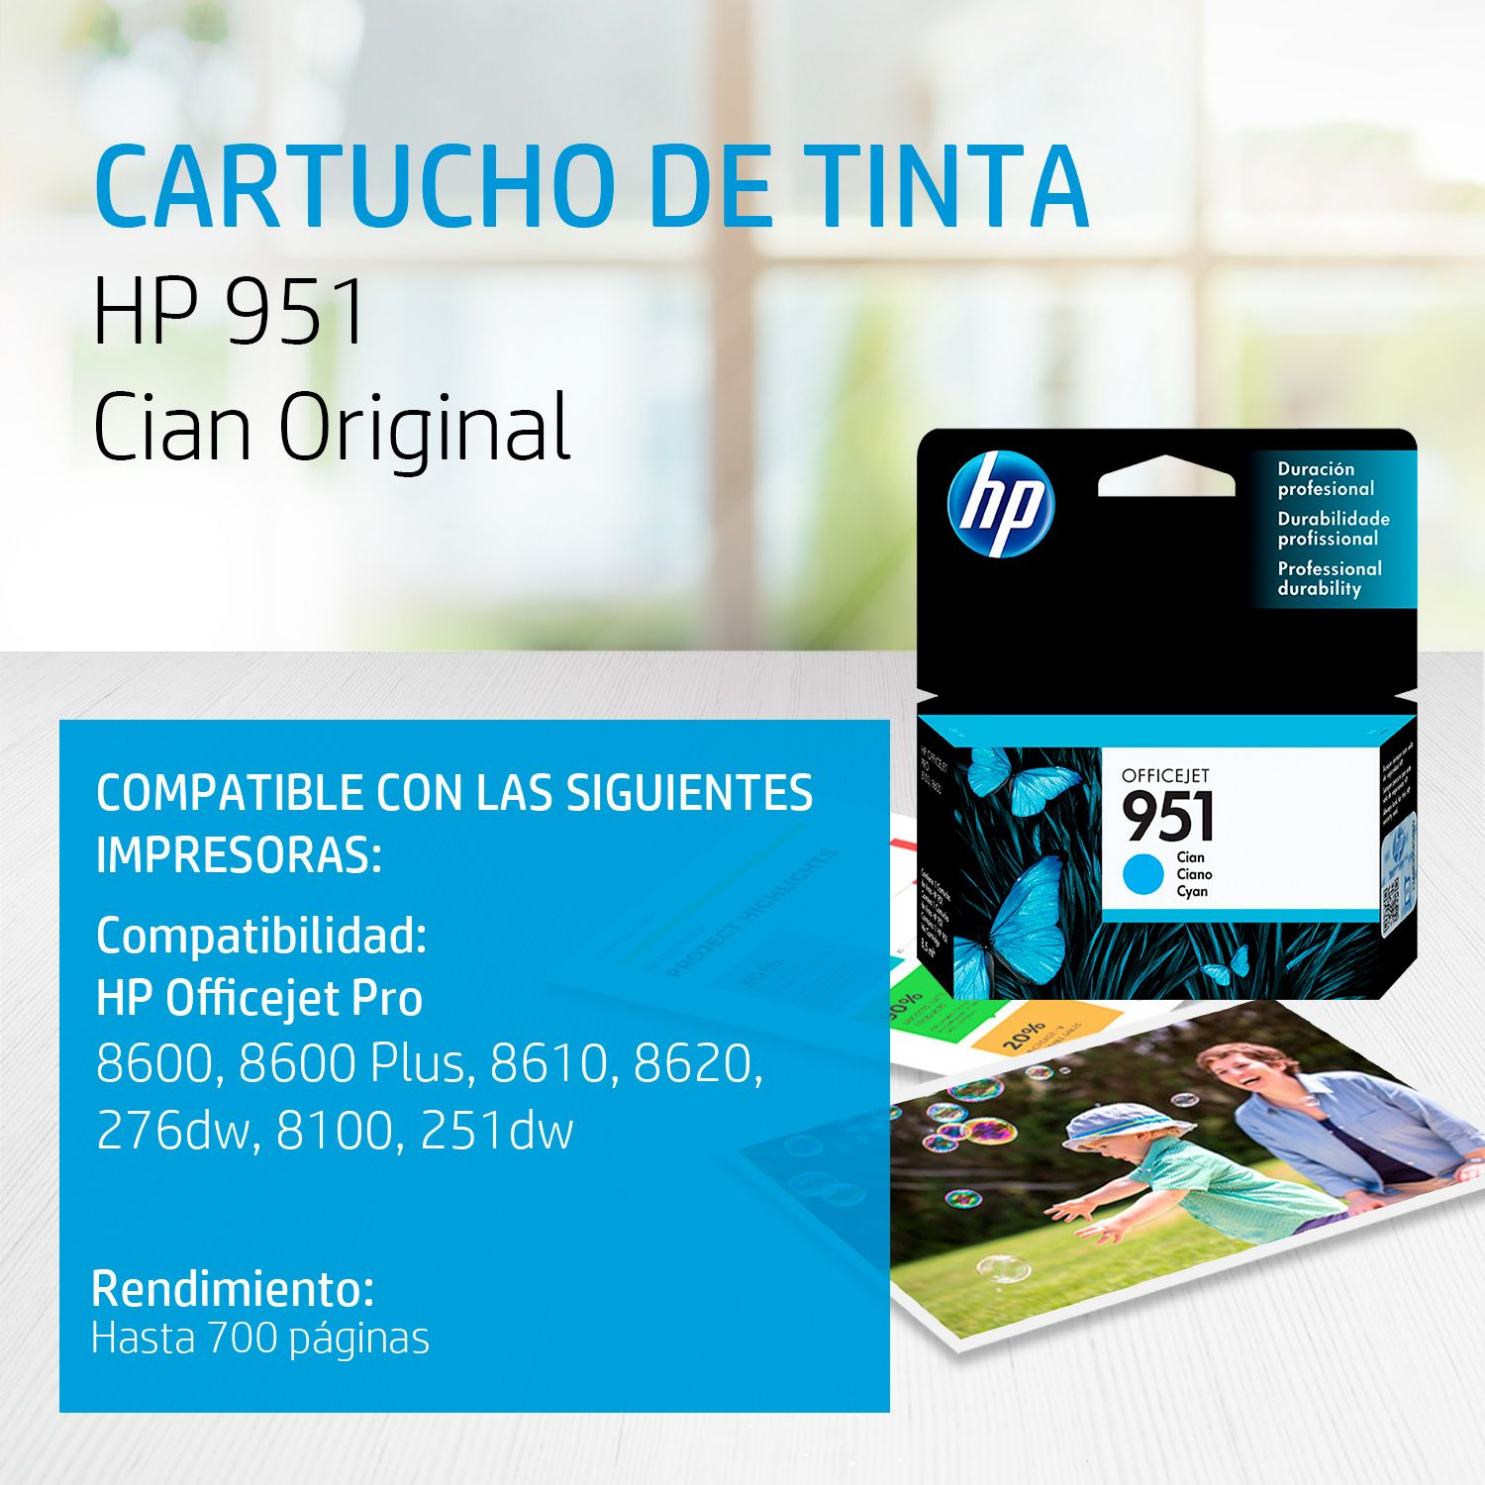 Cartucho de tinta HP 951 Cian (CN050AL) OfficeJet 8100, 8600, 700 Pag.